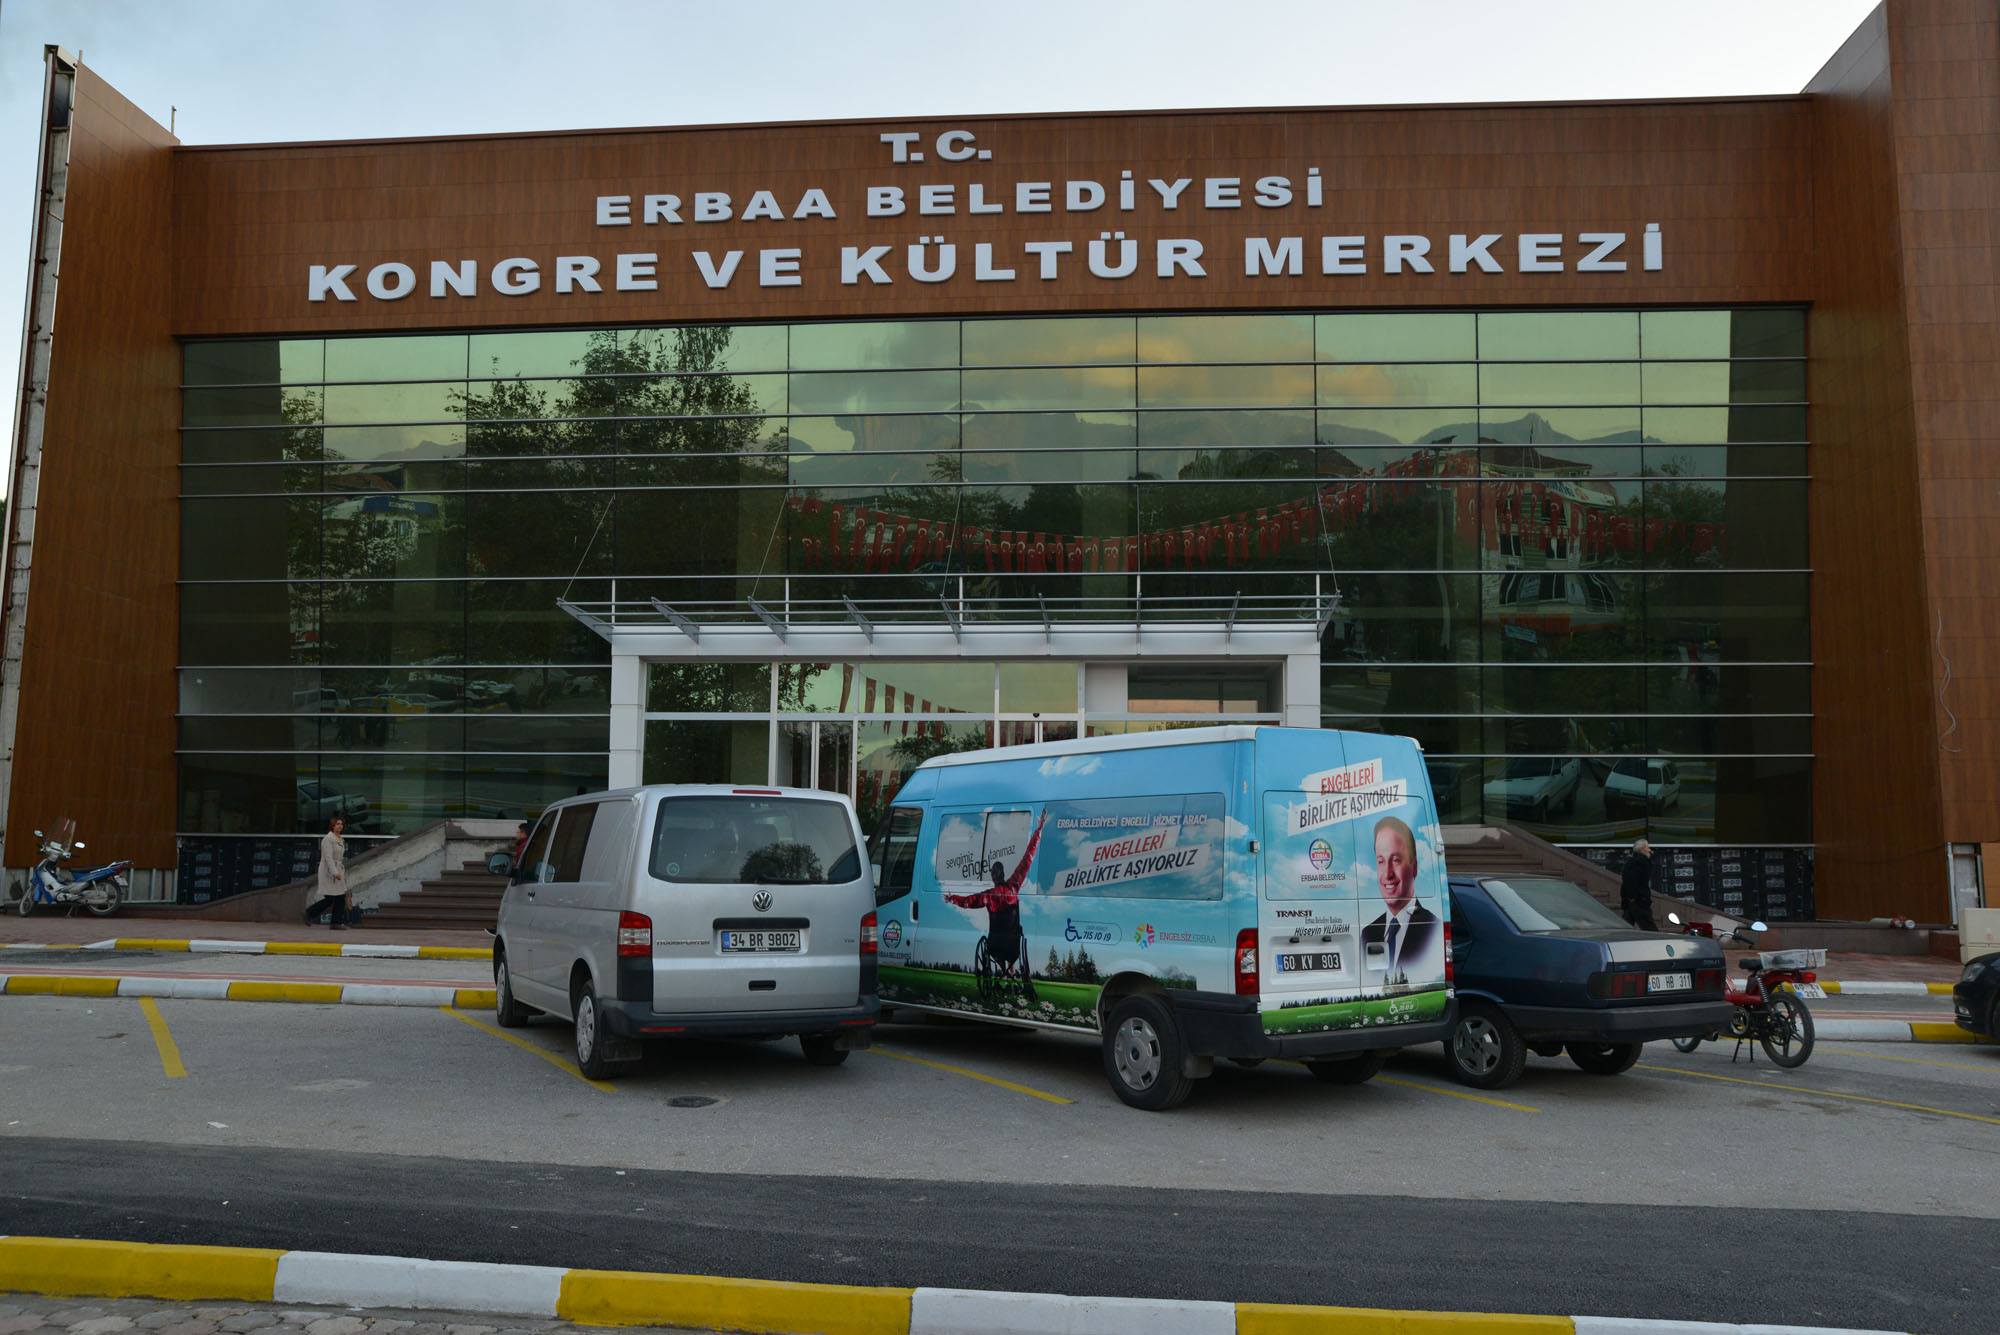 Erbaa Belediyesi Kongre ve Kültür Merkezinin Sözleşmesini Feshetti